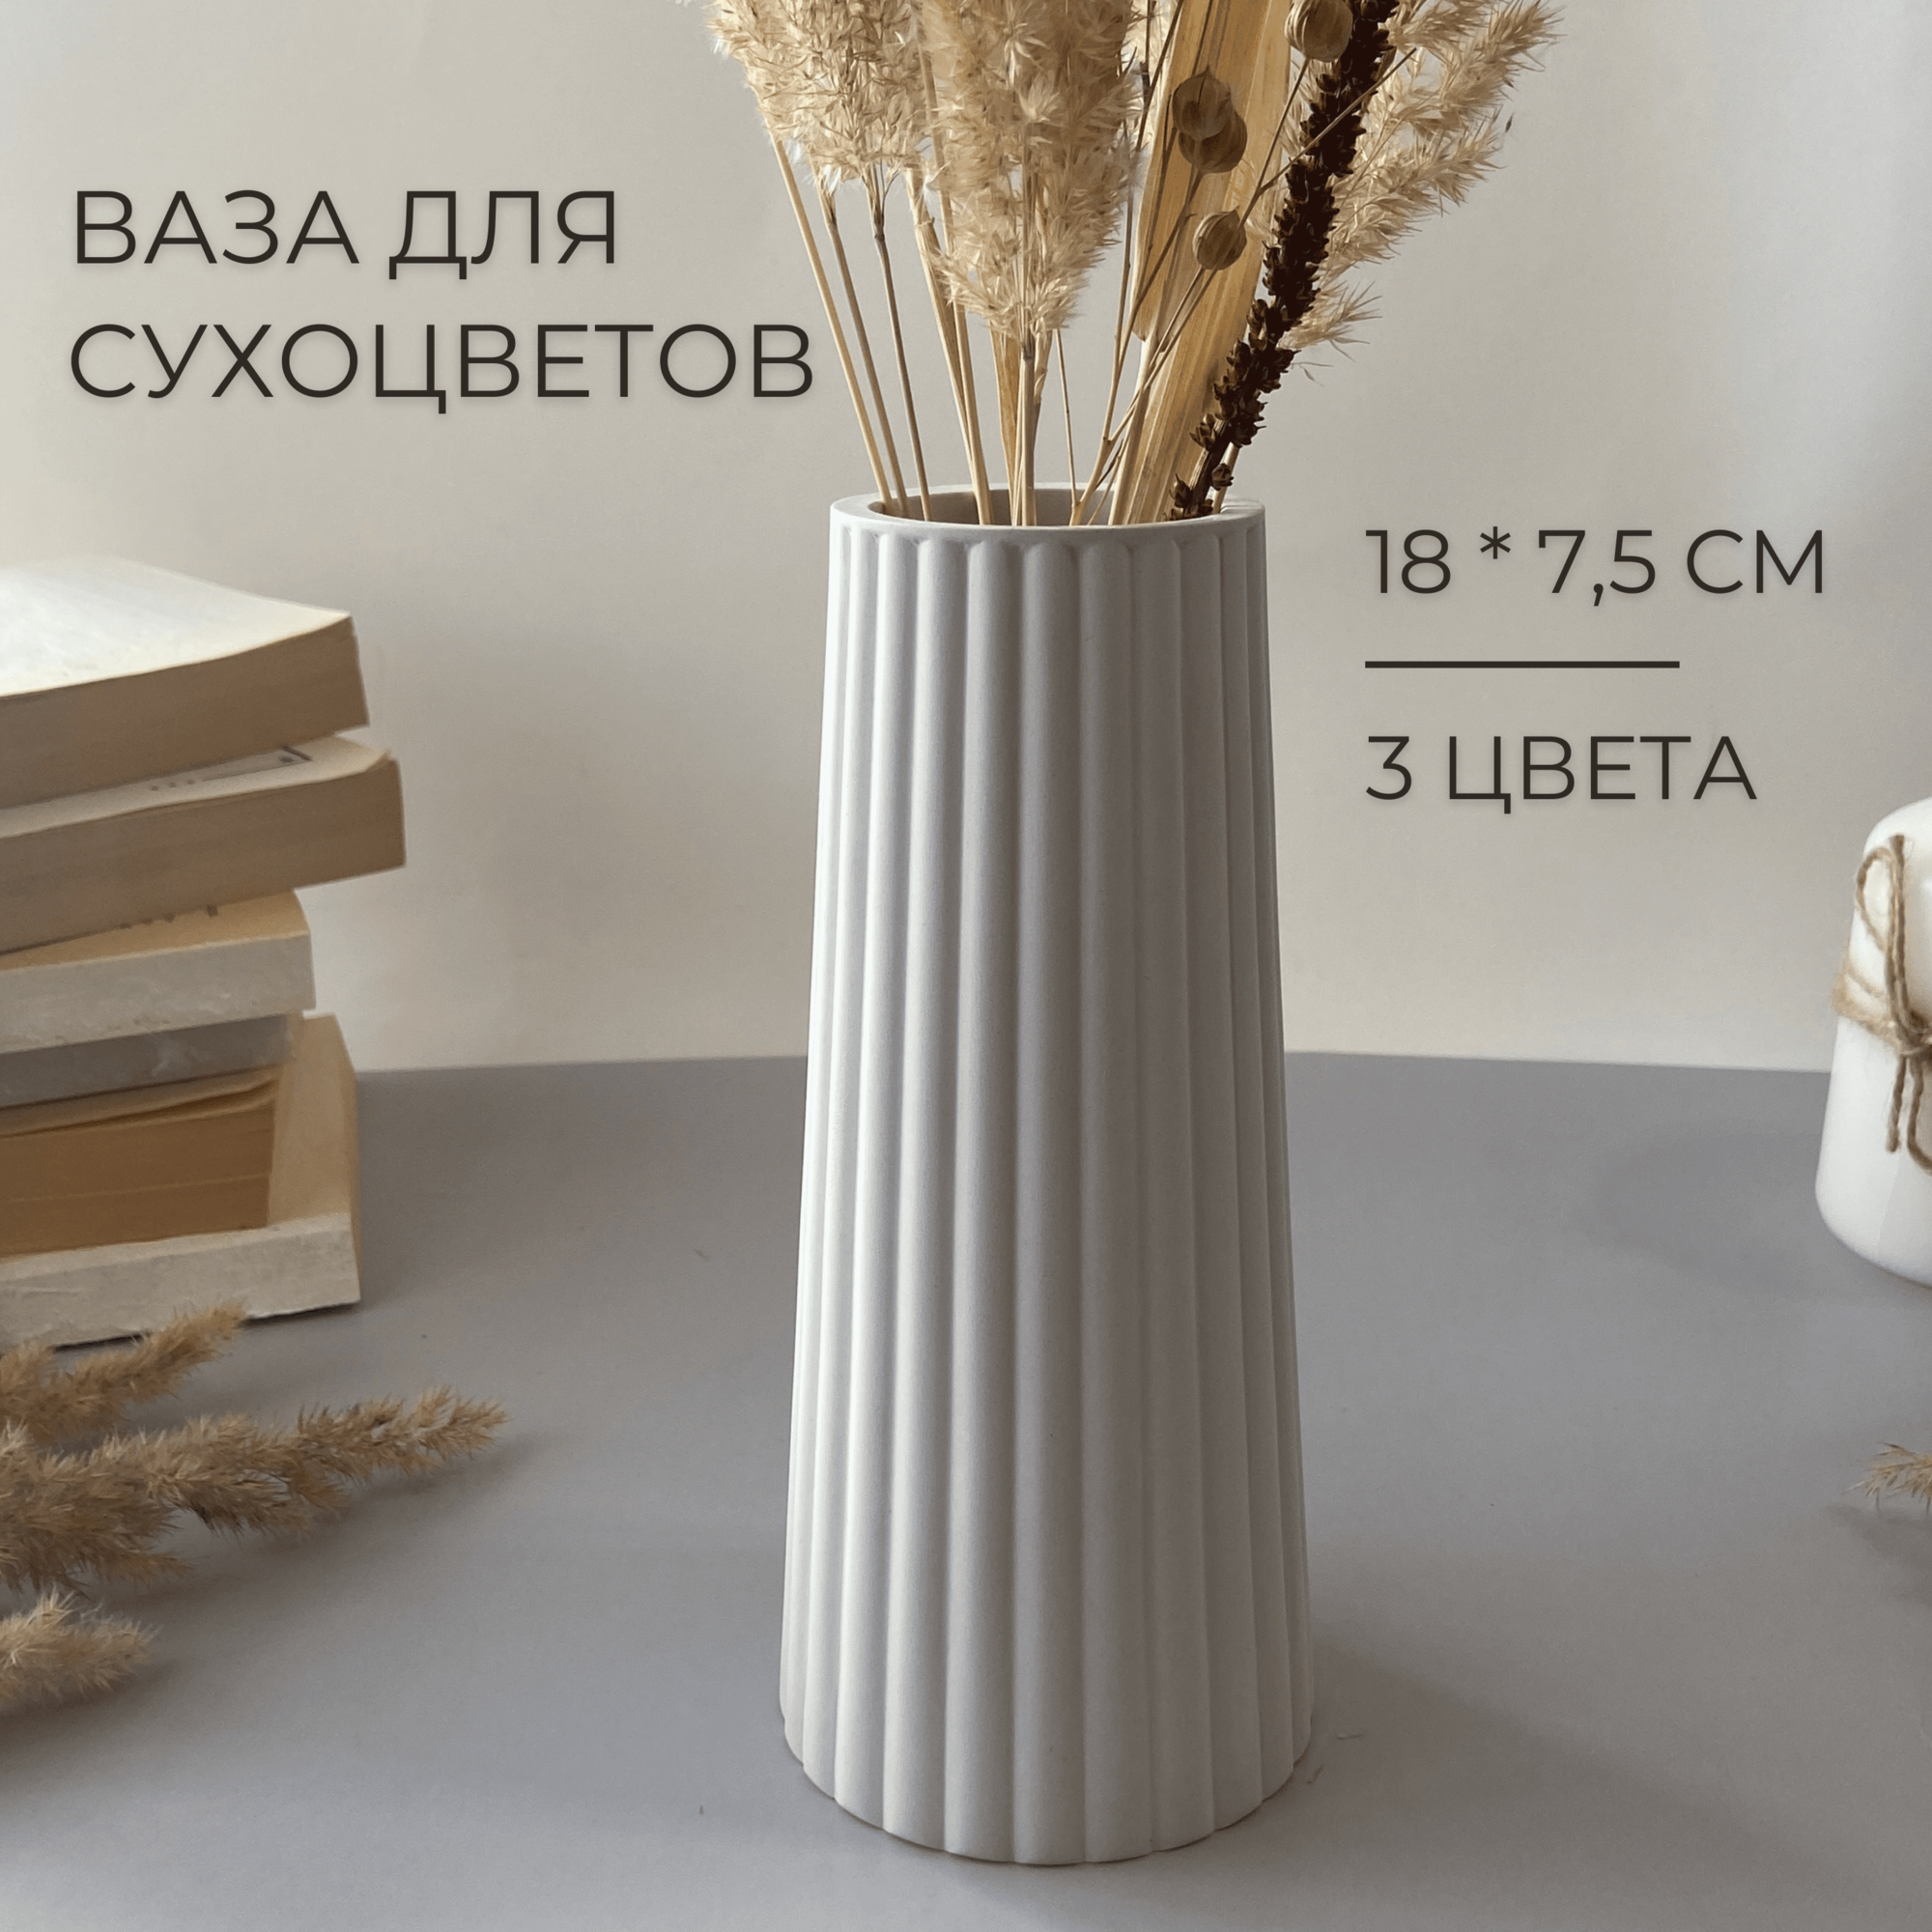 Большая декоративная ваза для сухоцветов 18 см настольная ваза для искусственных цветов и сухих букетов белый